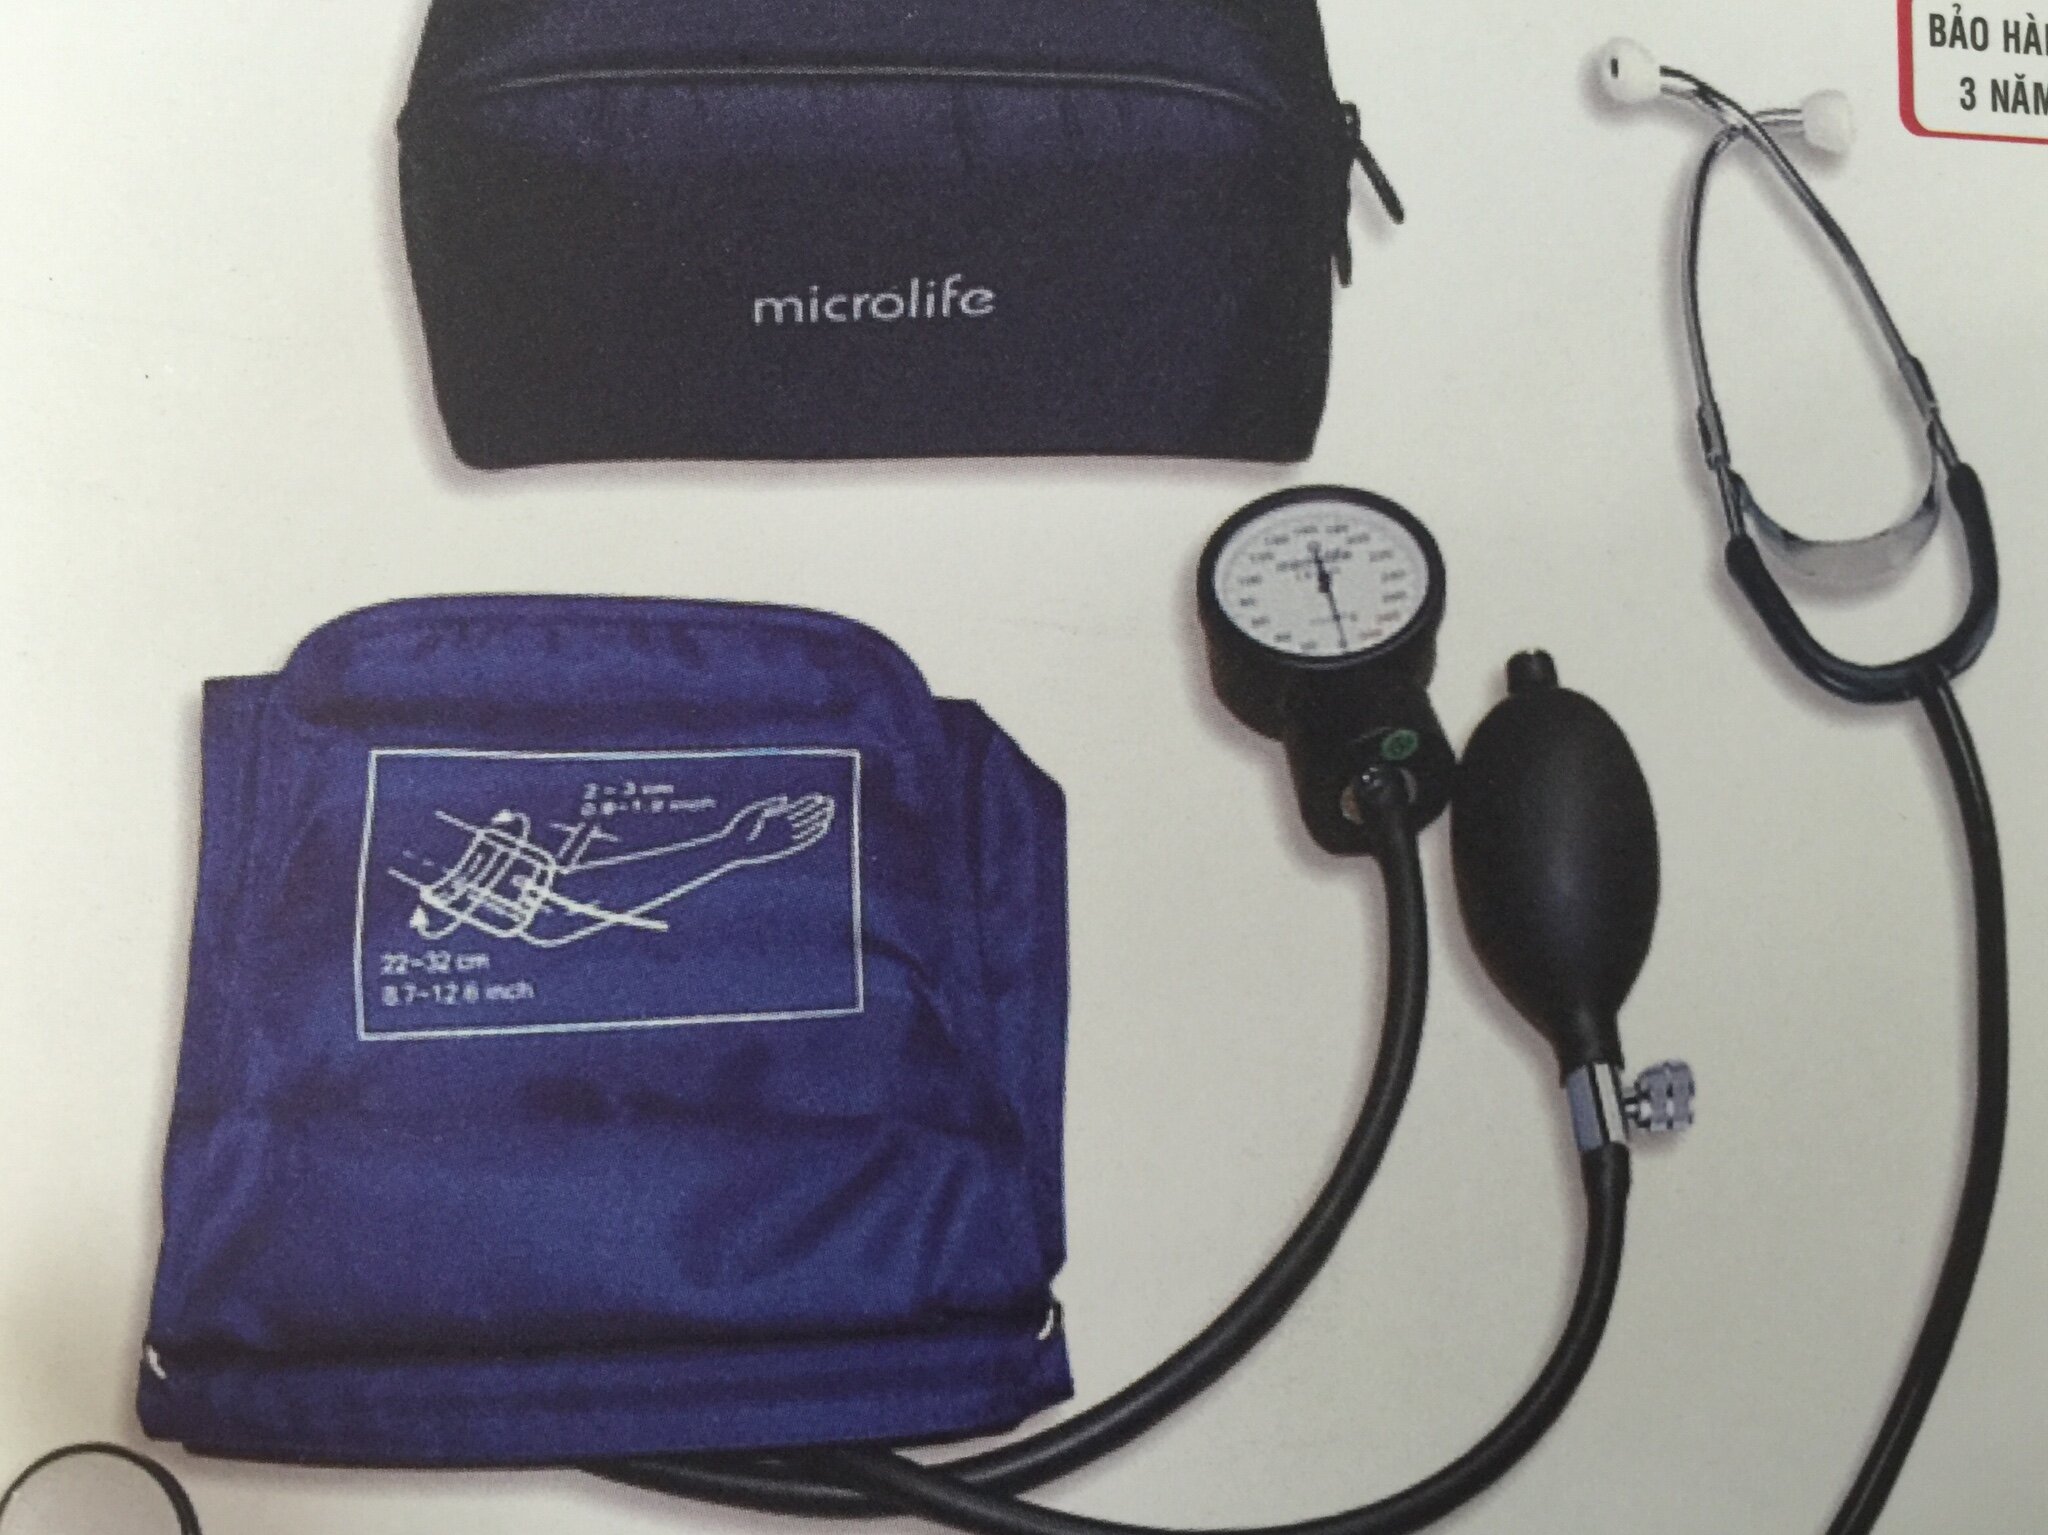 Máy đo huyết áp Microlife 